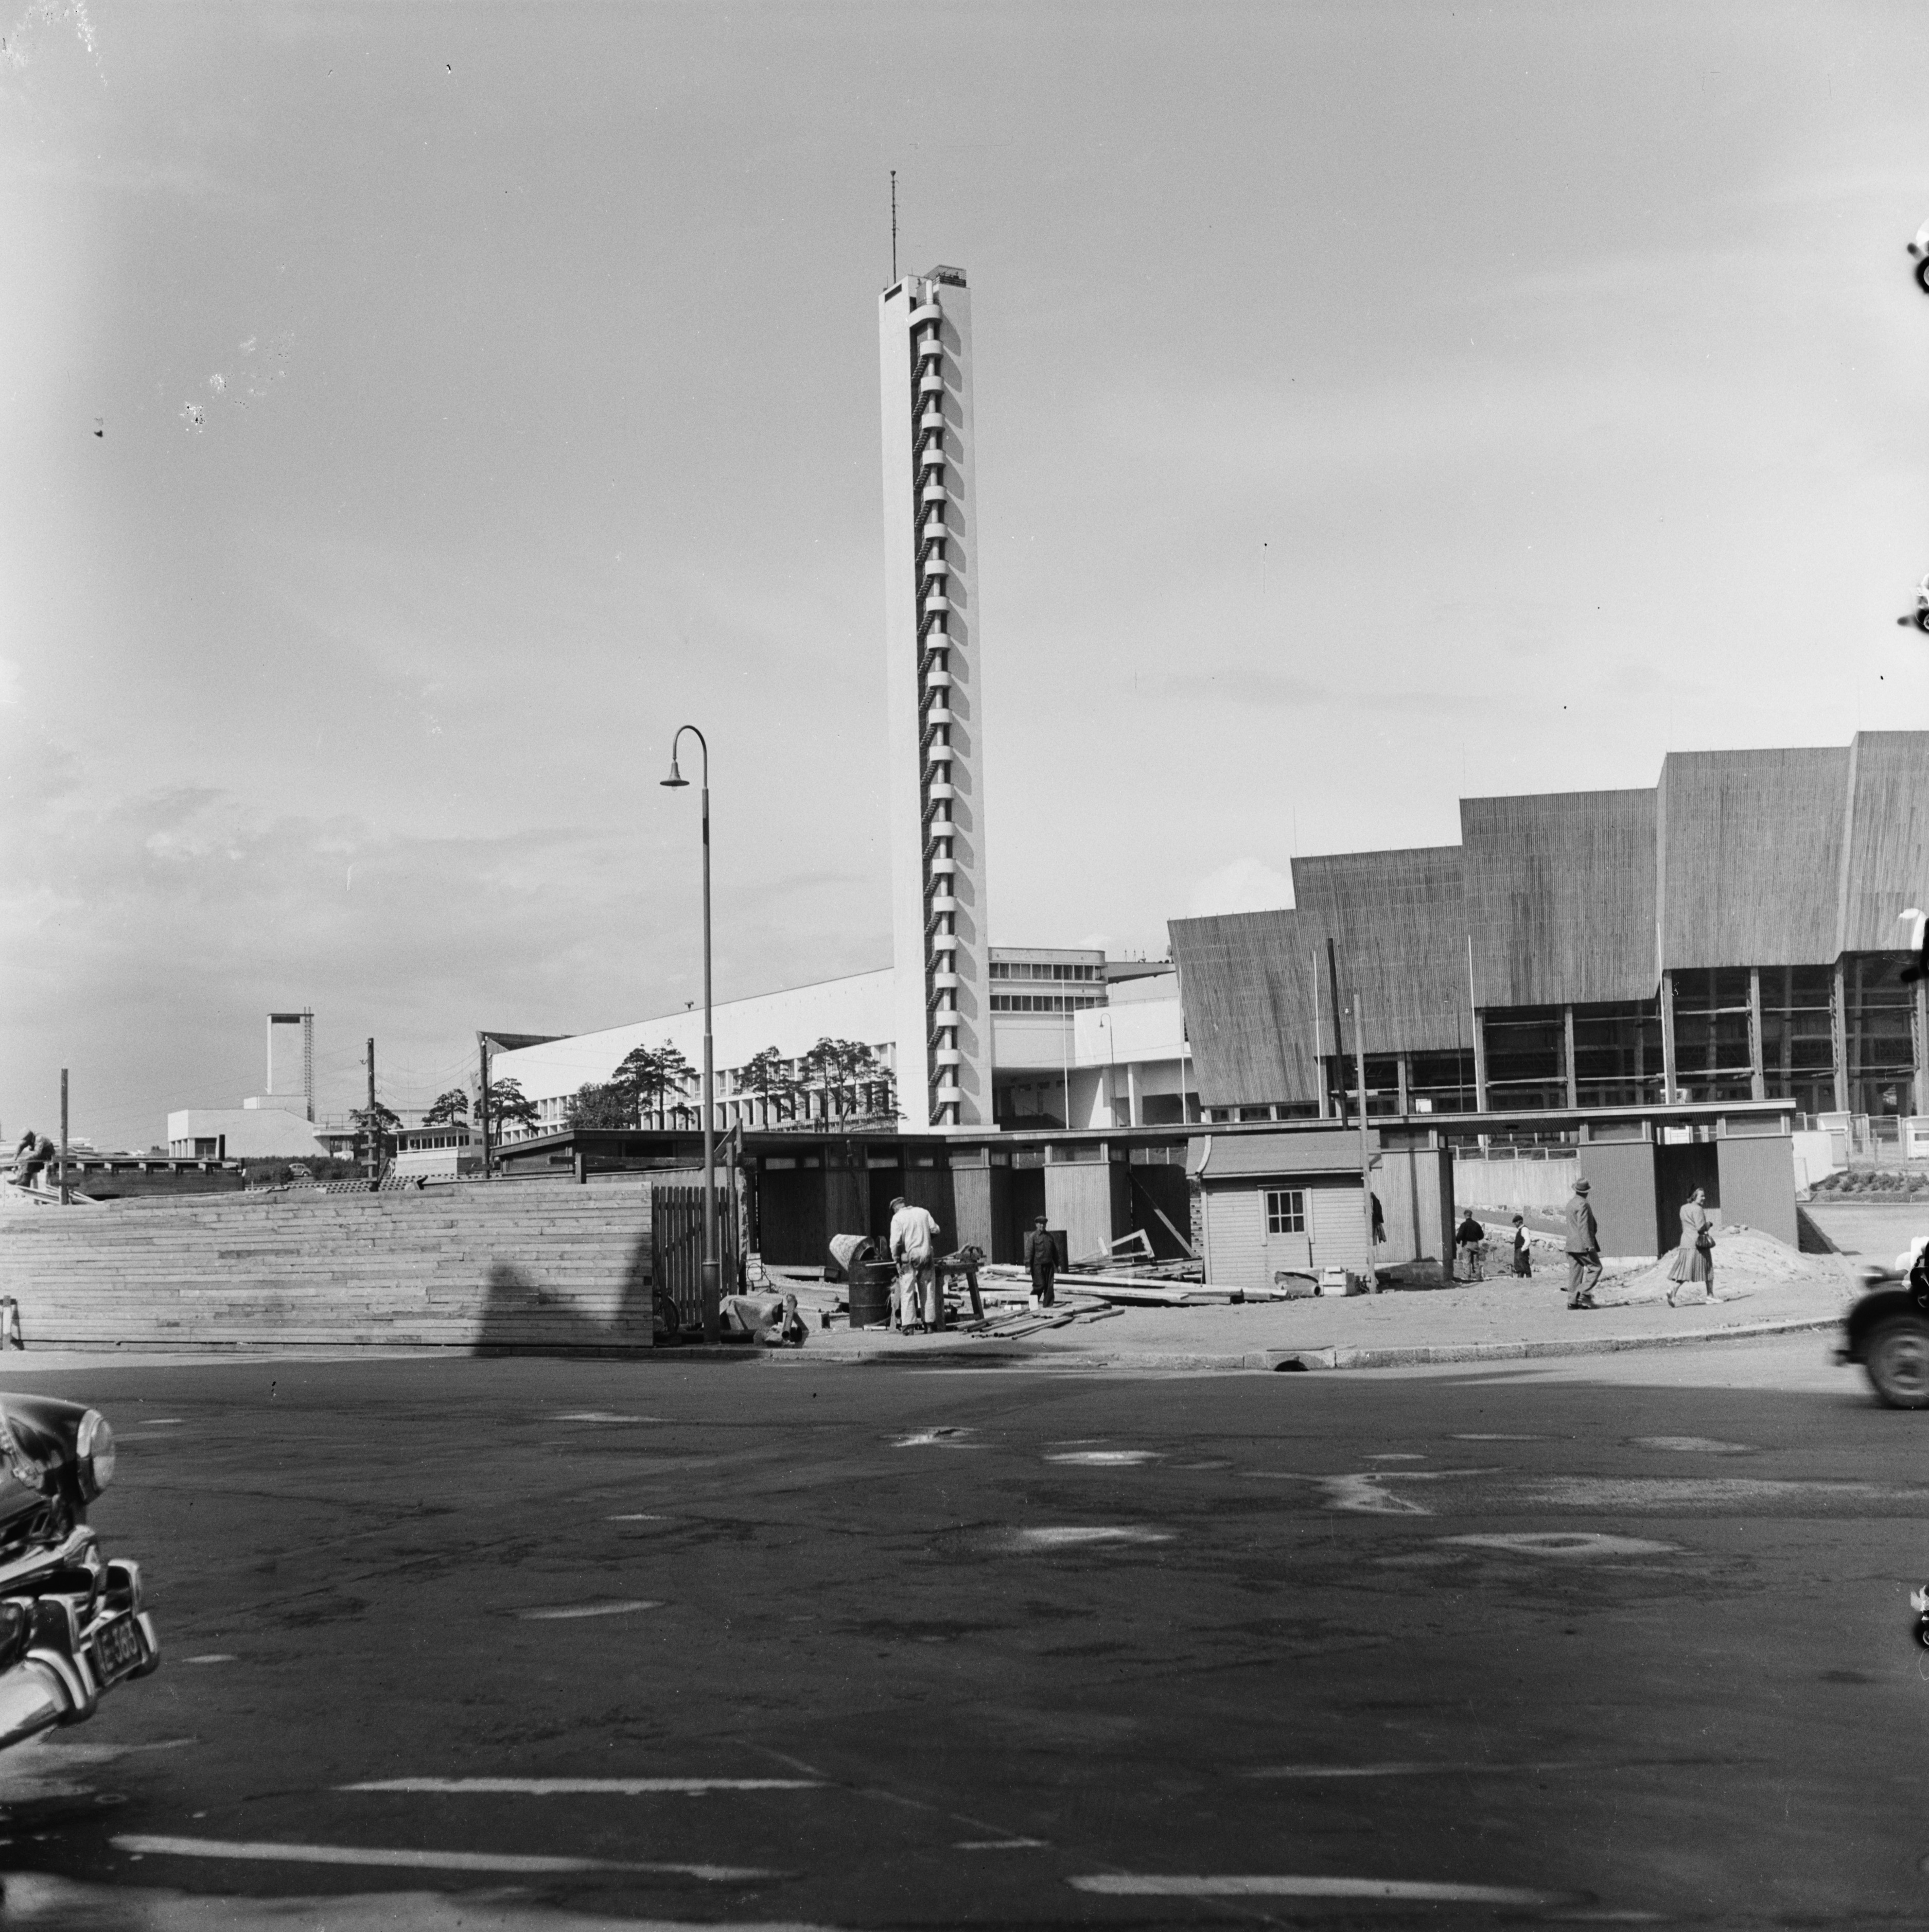 Helsingin olympialaiset 1952. Olympiatadionin eteen rakennetaan lippukojuja.